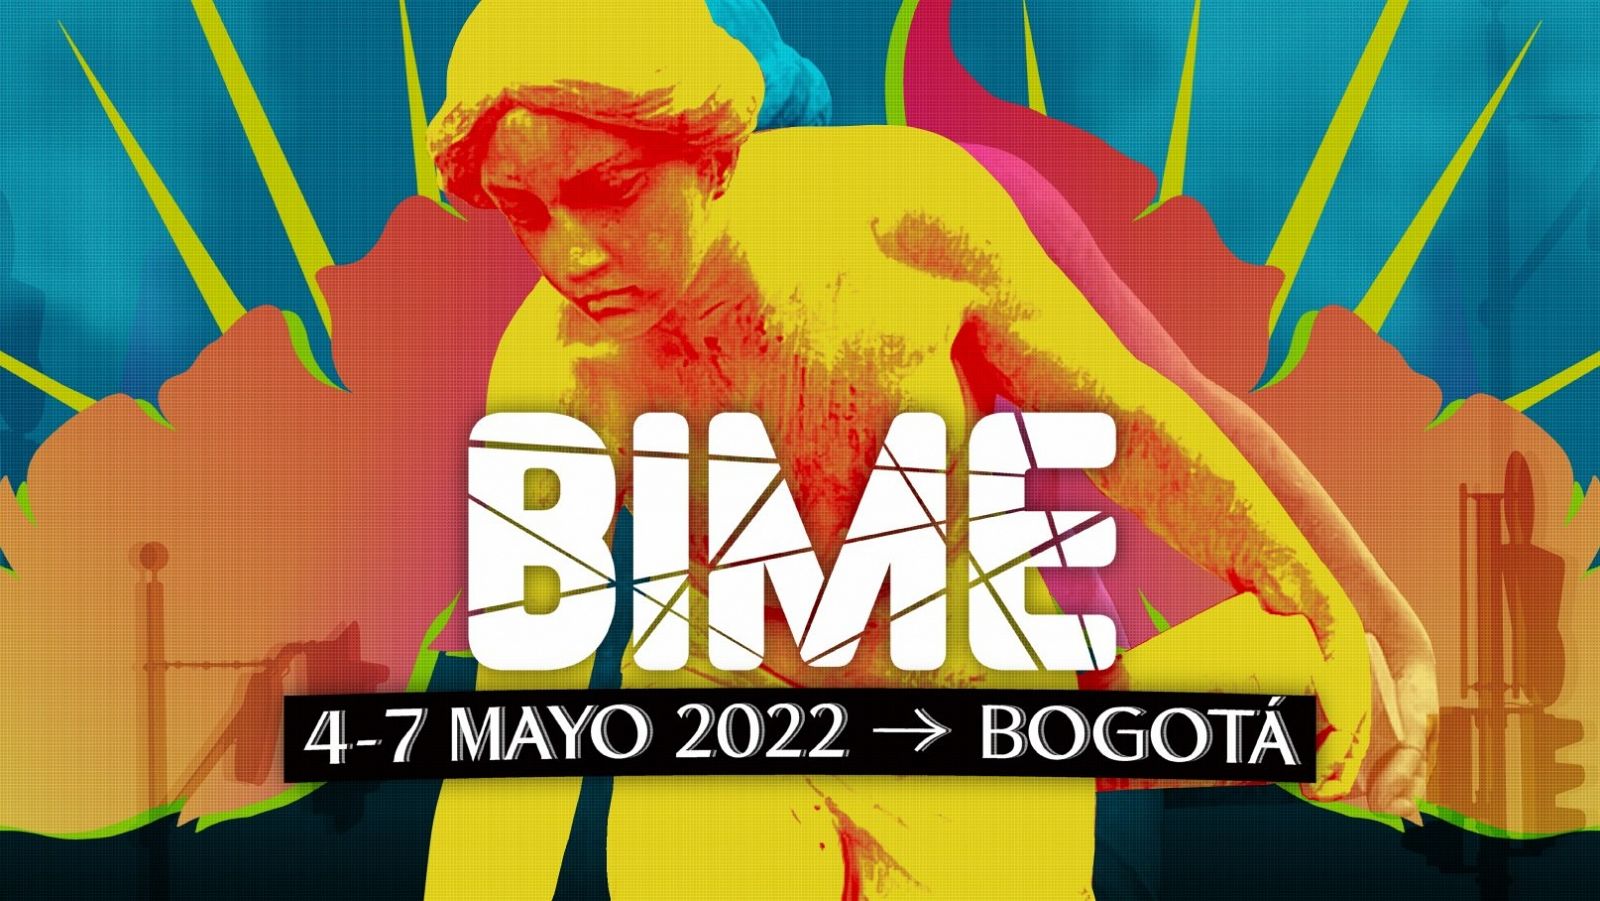  BIME Bogotá